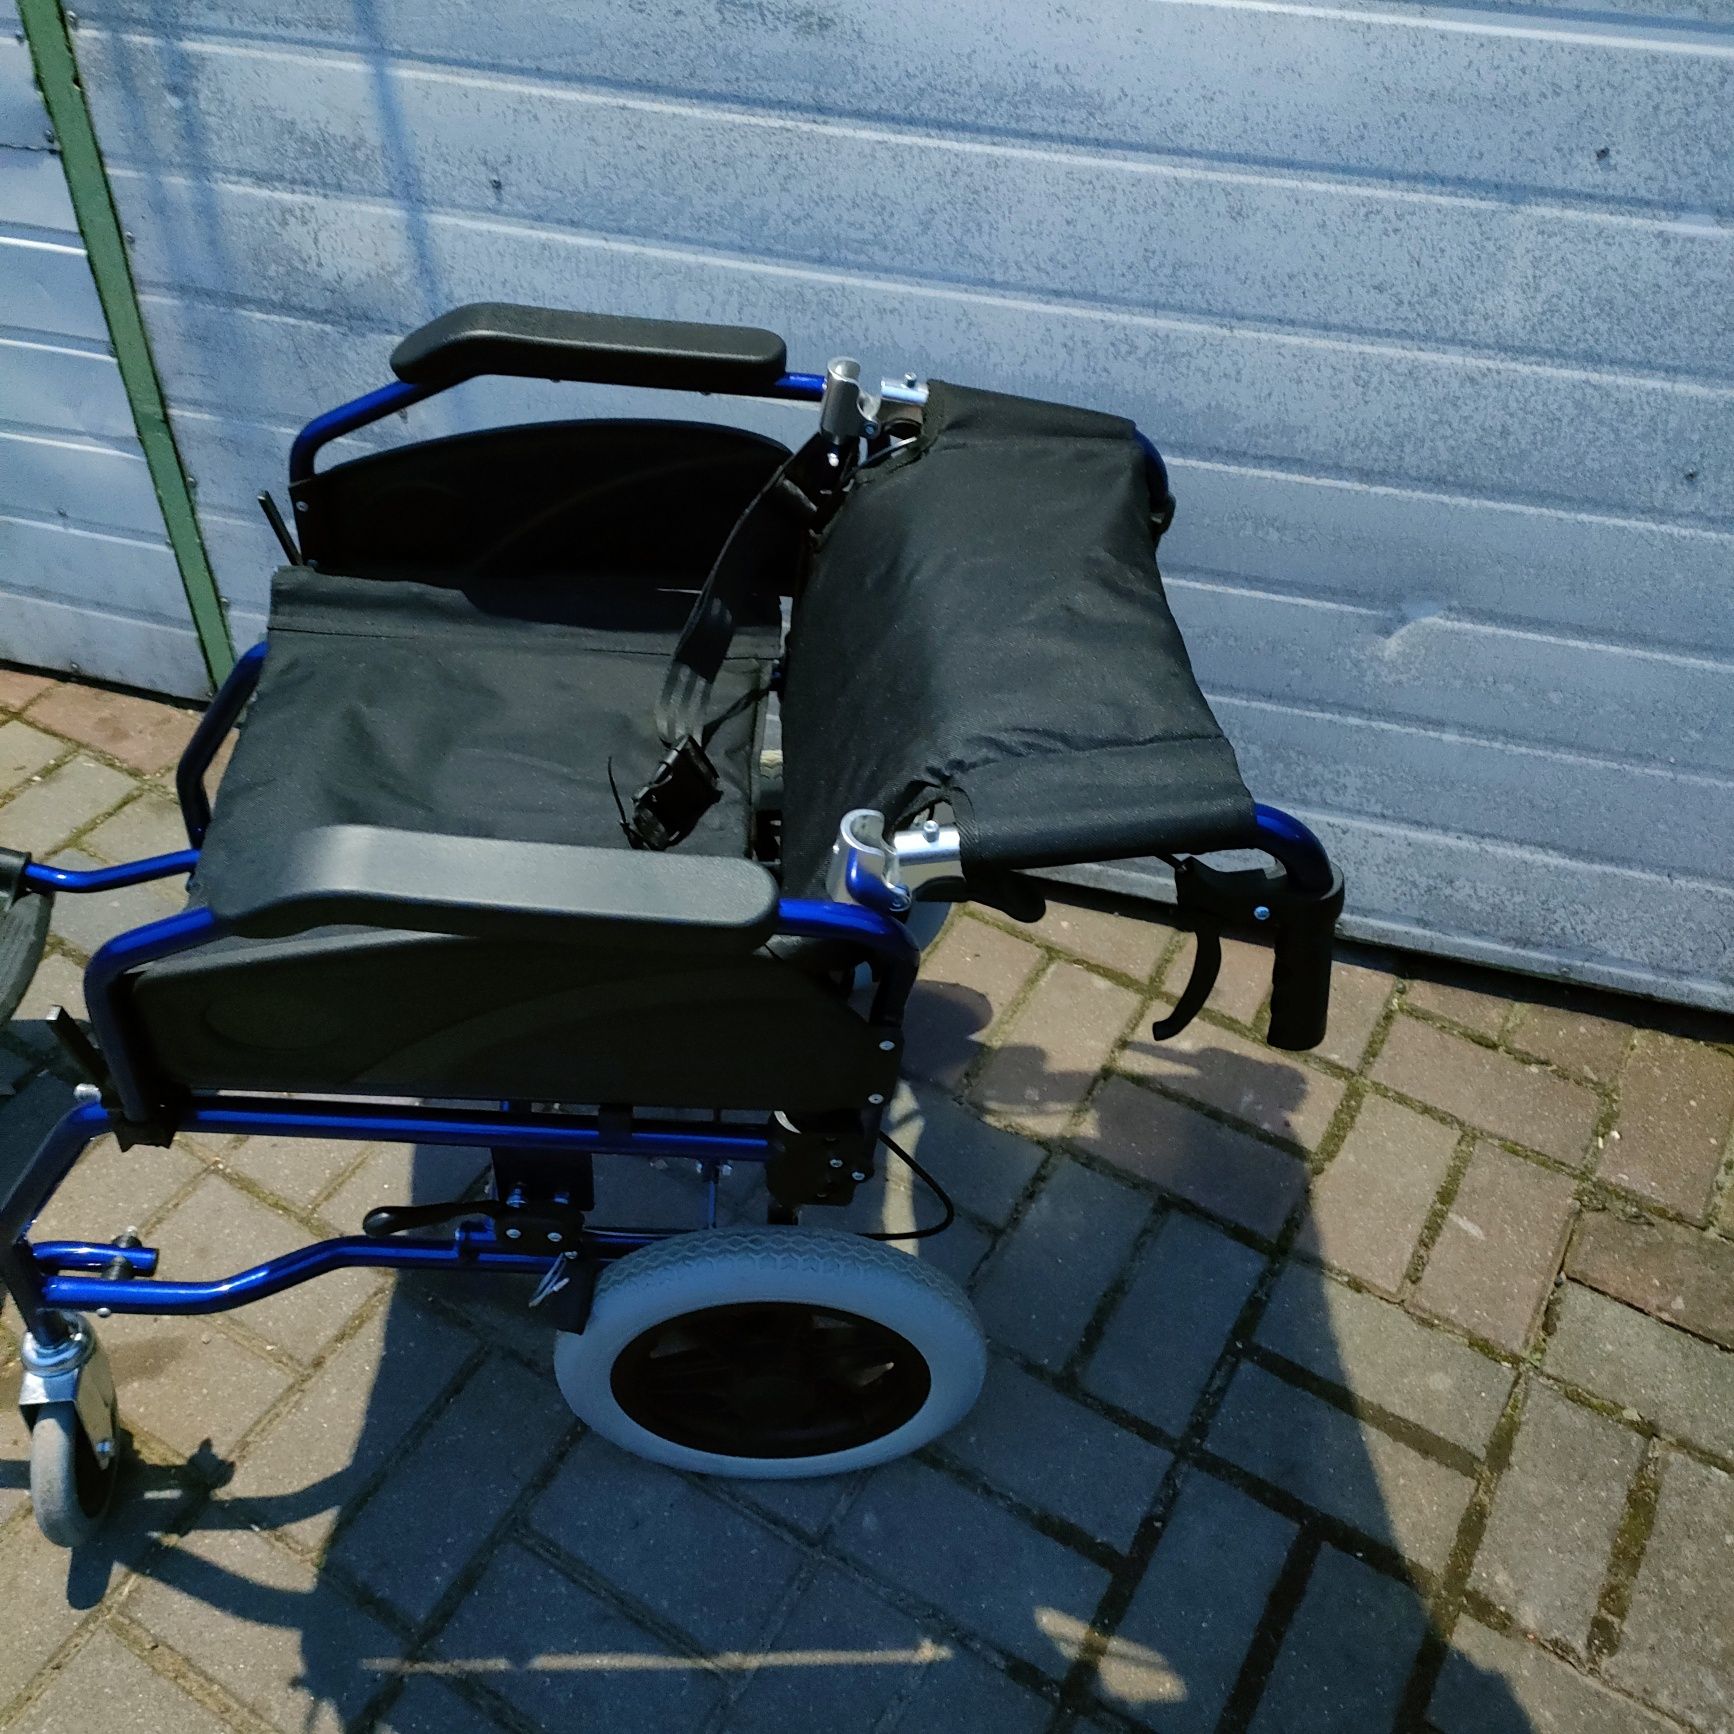 Wózek inwalidzki składany